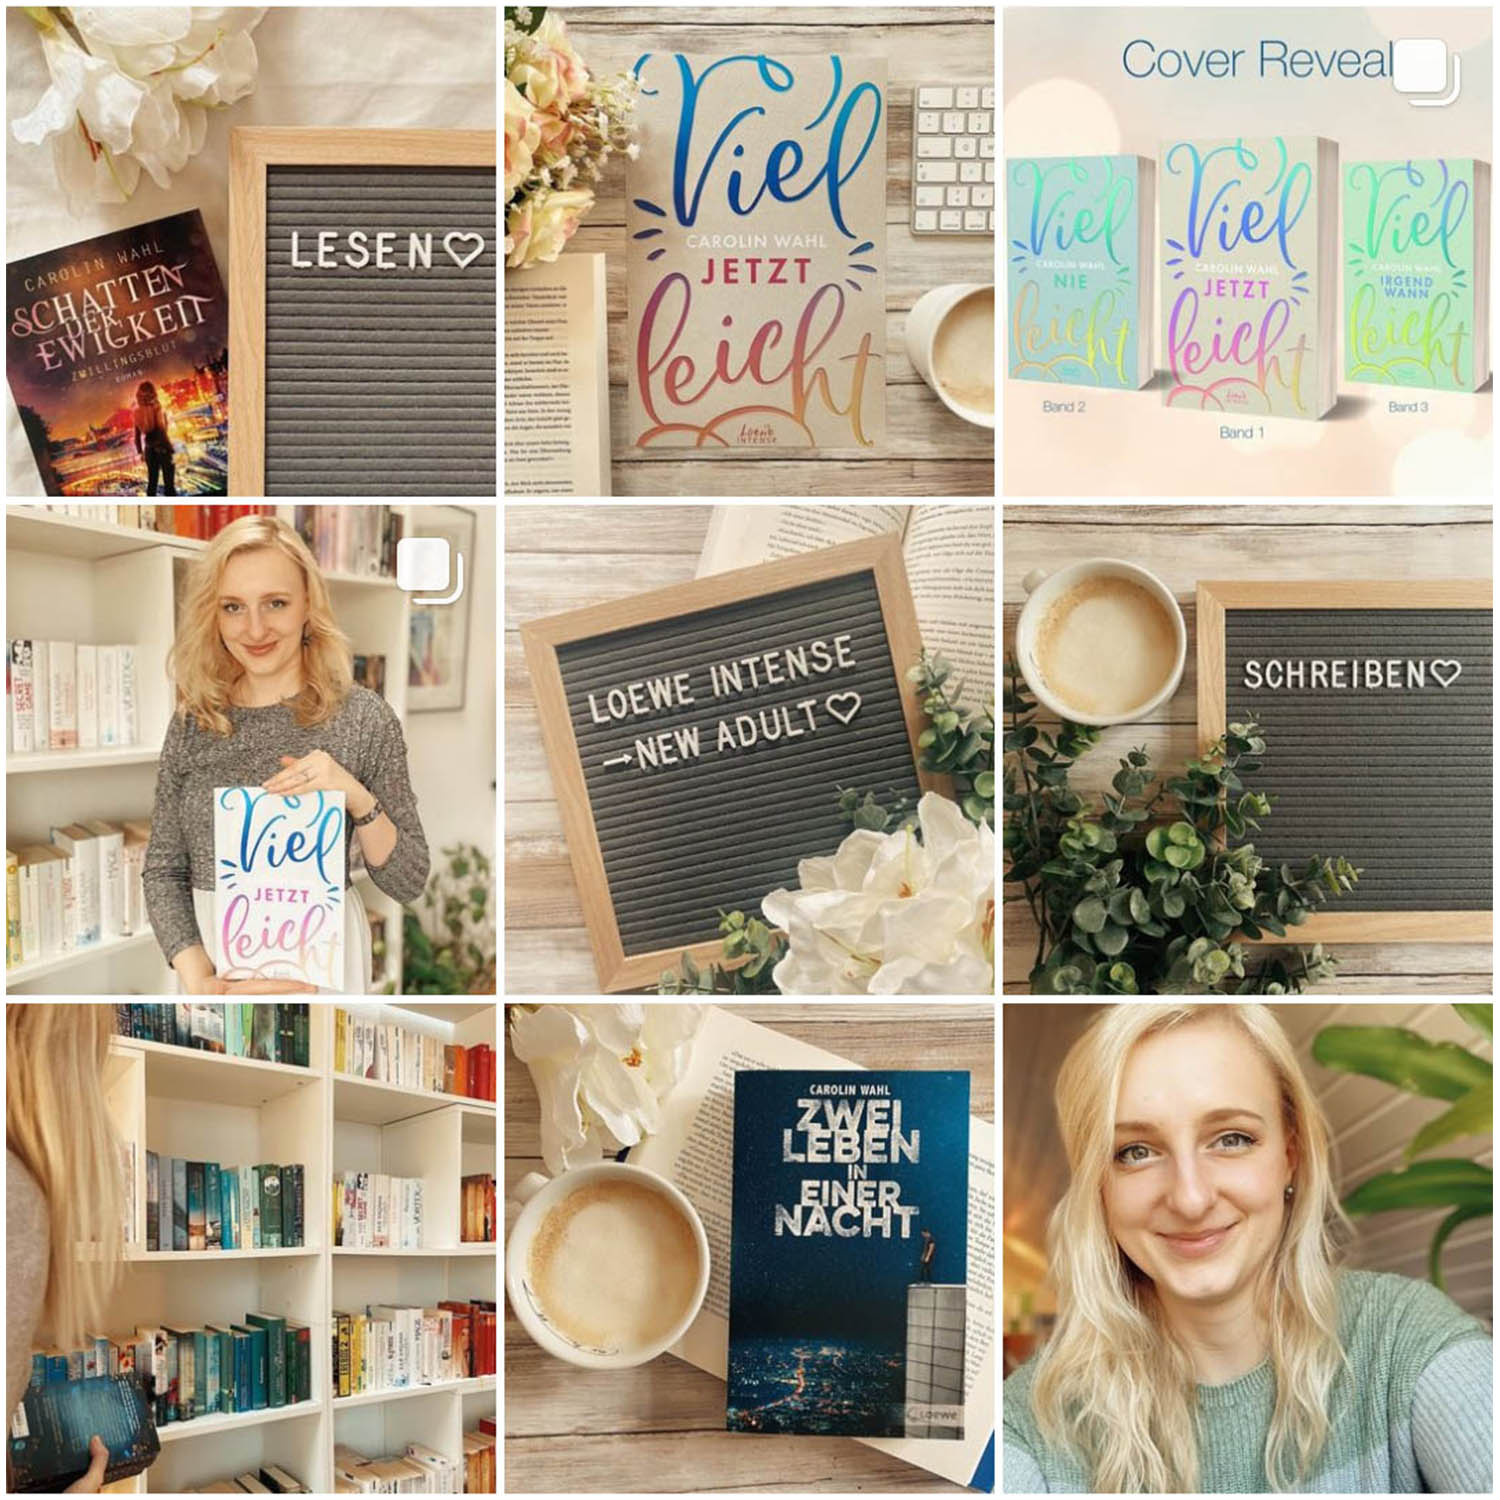 Auf ihrem Instagram-Profil teilt New Adult Autorin Carolin Wahl exklusive Informationen zu ihren Liebesgeschichten mit ihren Leserinnen.